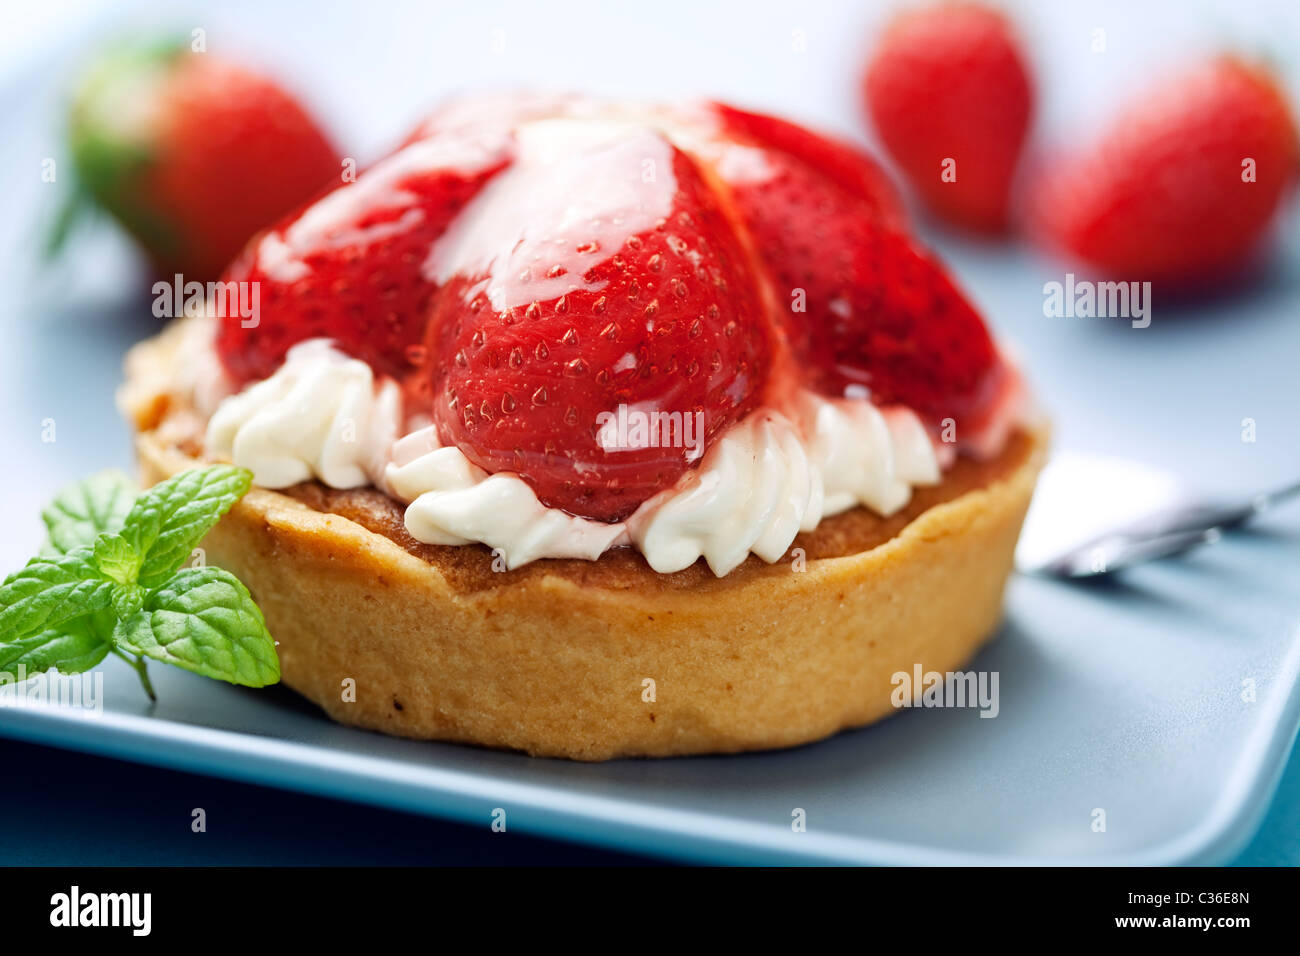 tart with fresh cream and strawberries Stock Photo